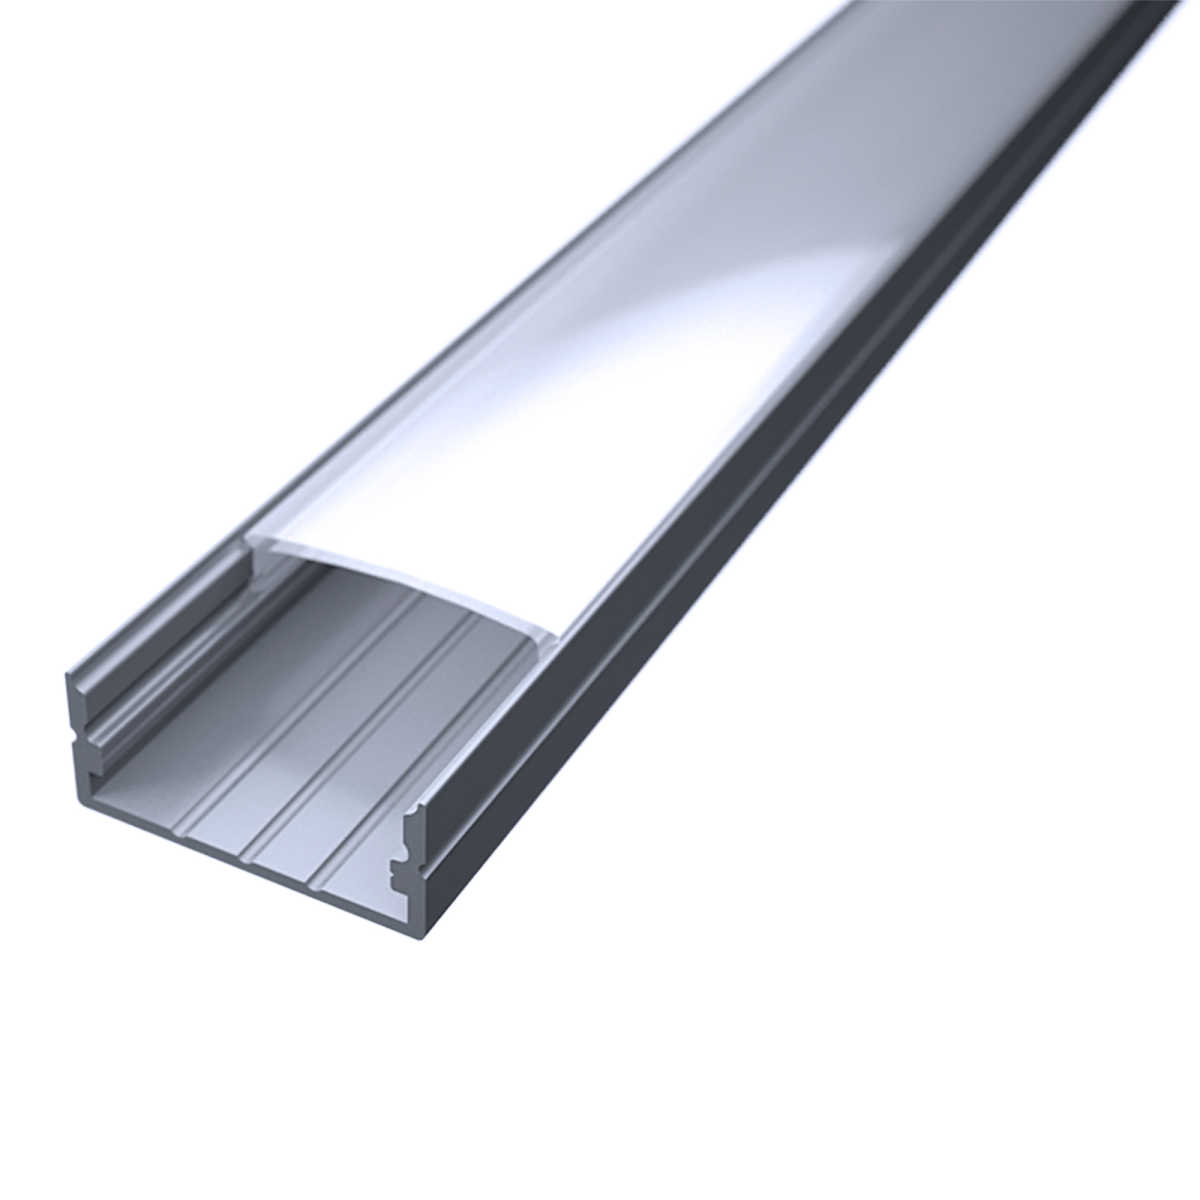 LED Flachprofil "Slim-Line max" | Abdeckung diffus | Zuschnitt auf 196cm |